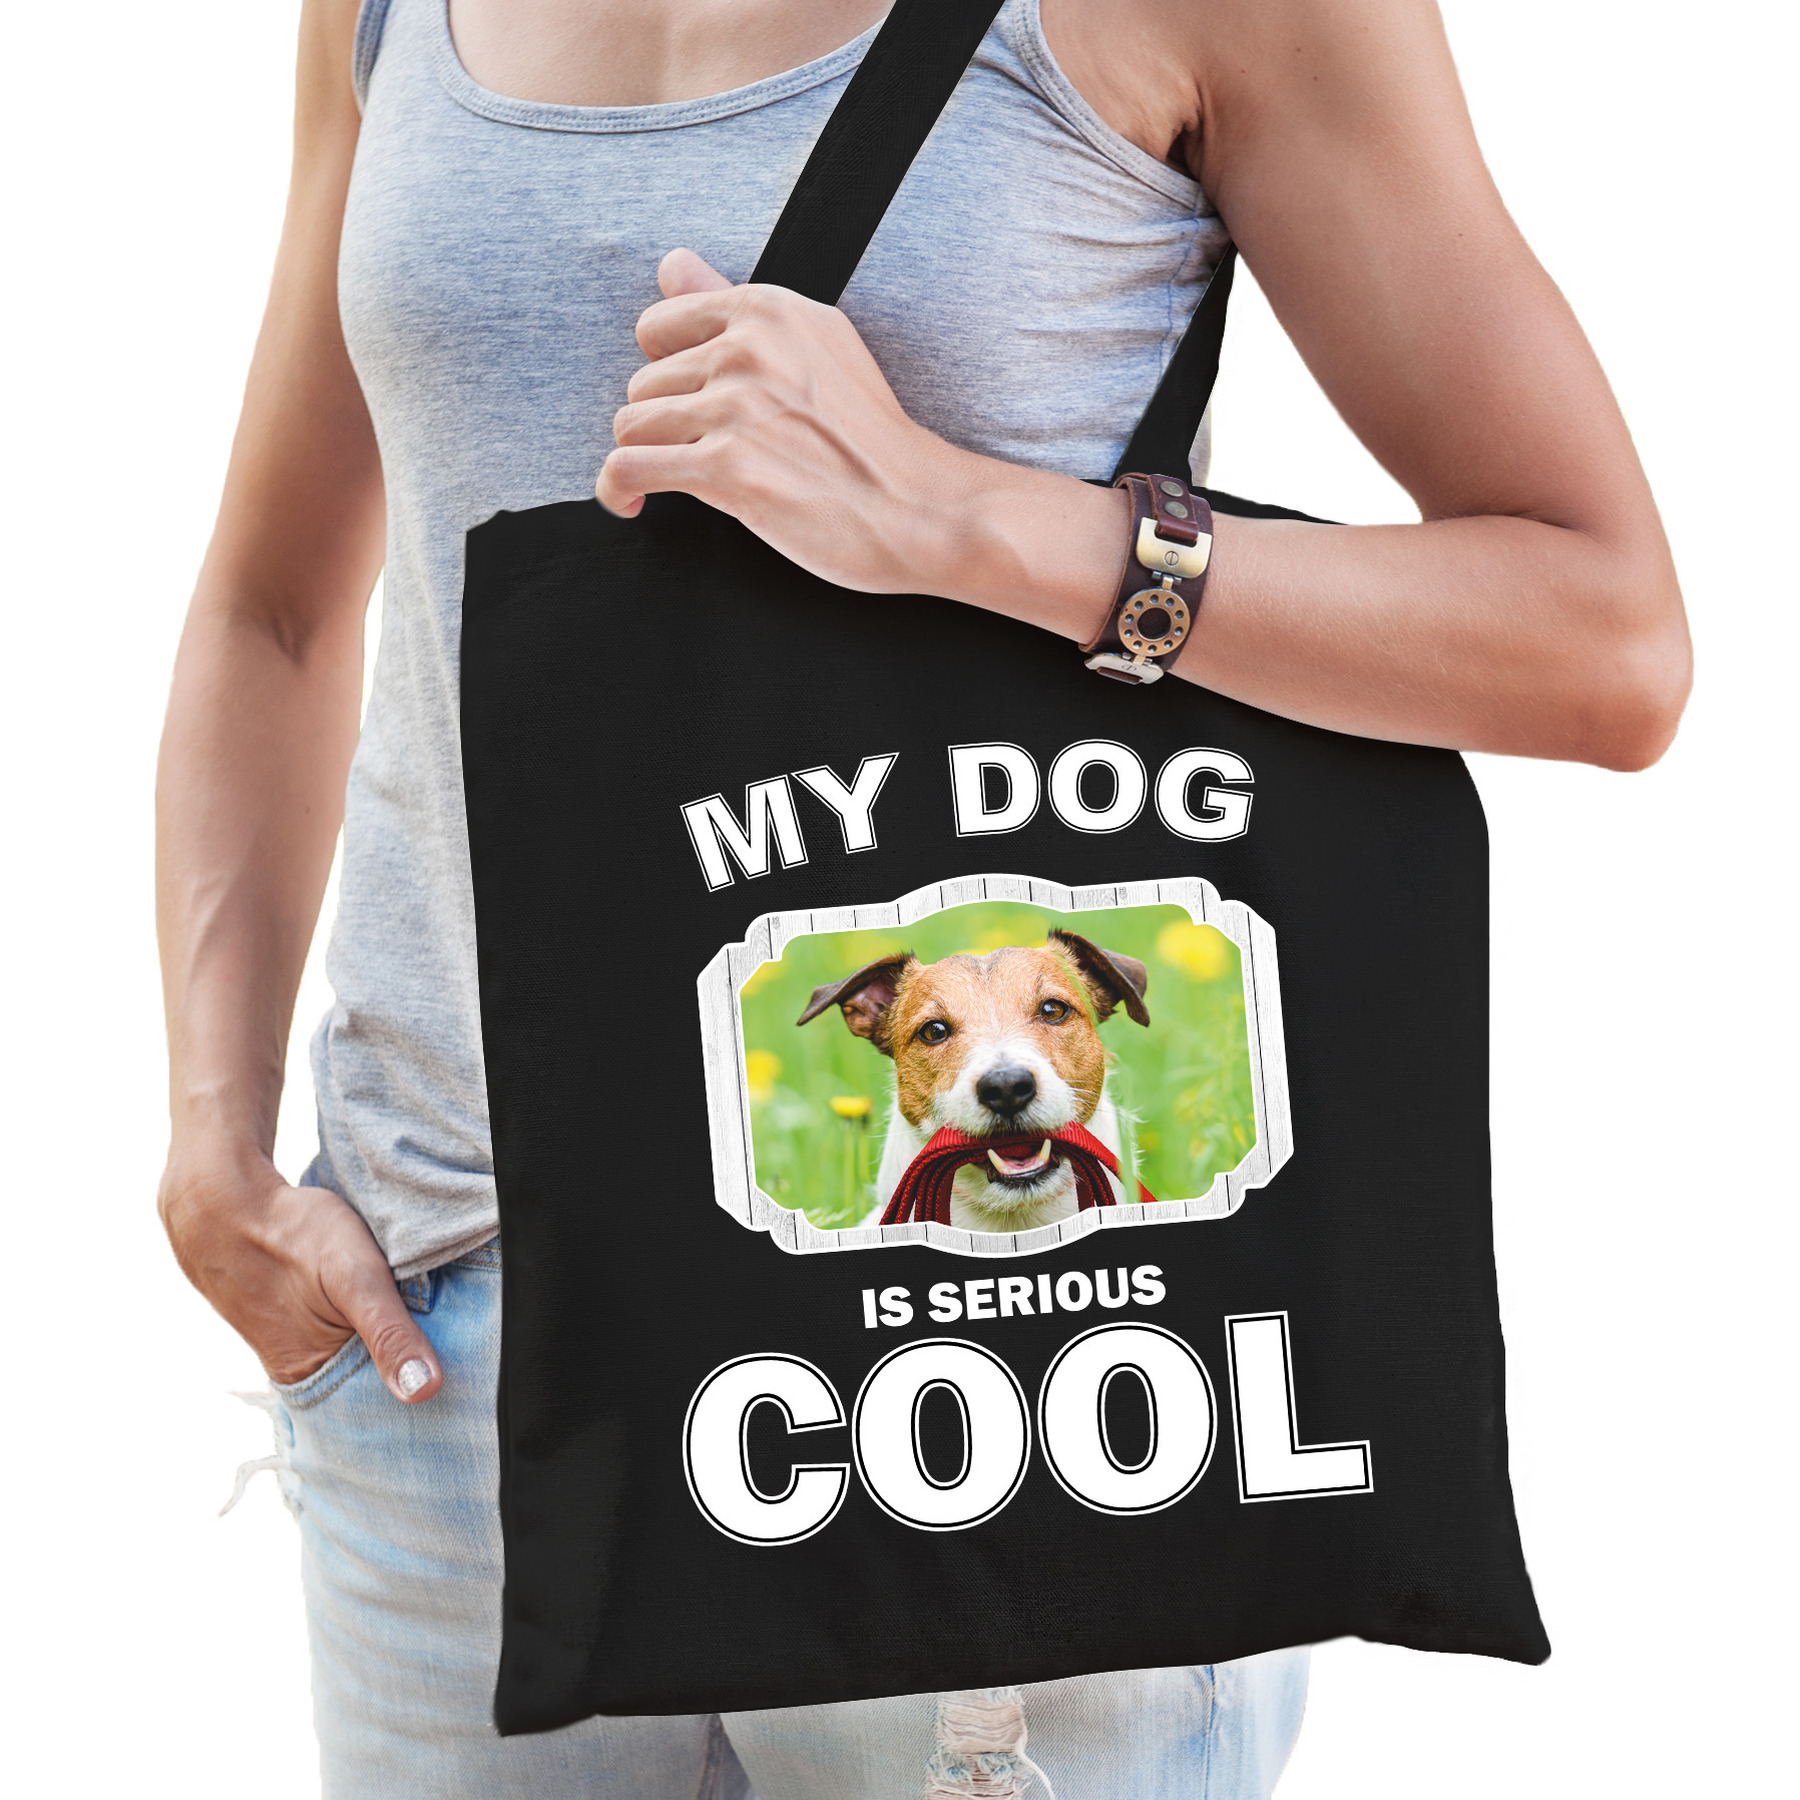 Afbeelding Katoenen tasje my dog is serious cool zwart - Jack russel honden cadeau tas door Animals Giftshop